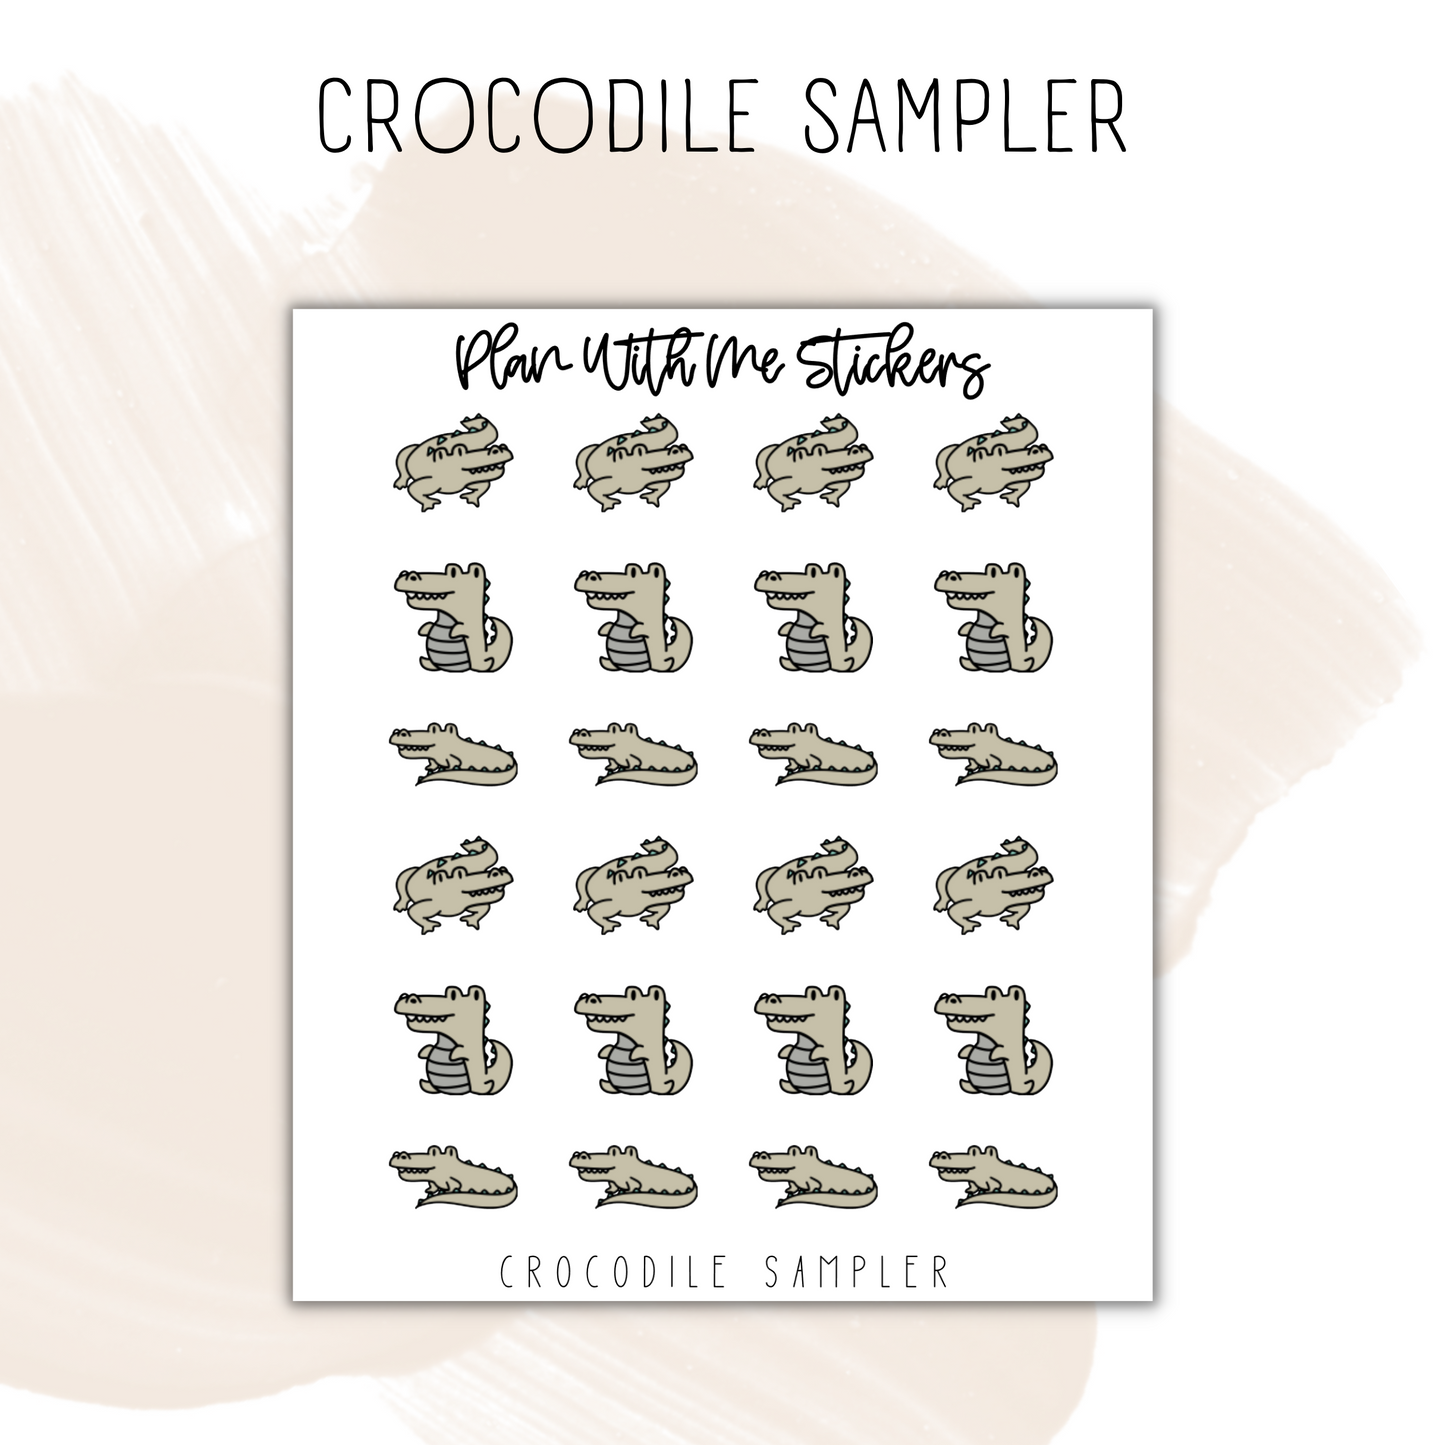 Crocodile Sampler | Doodles